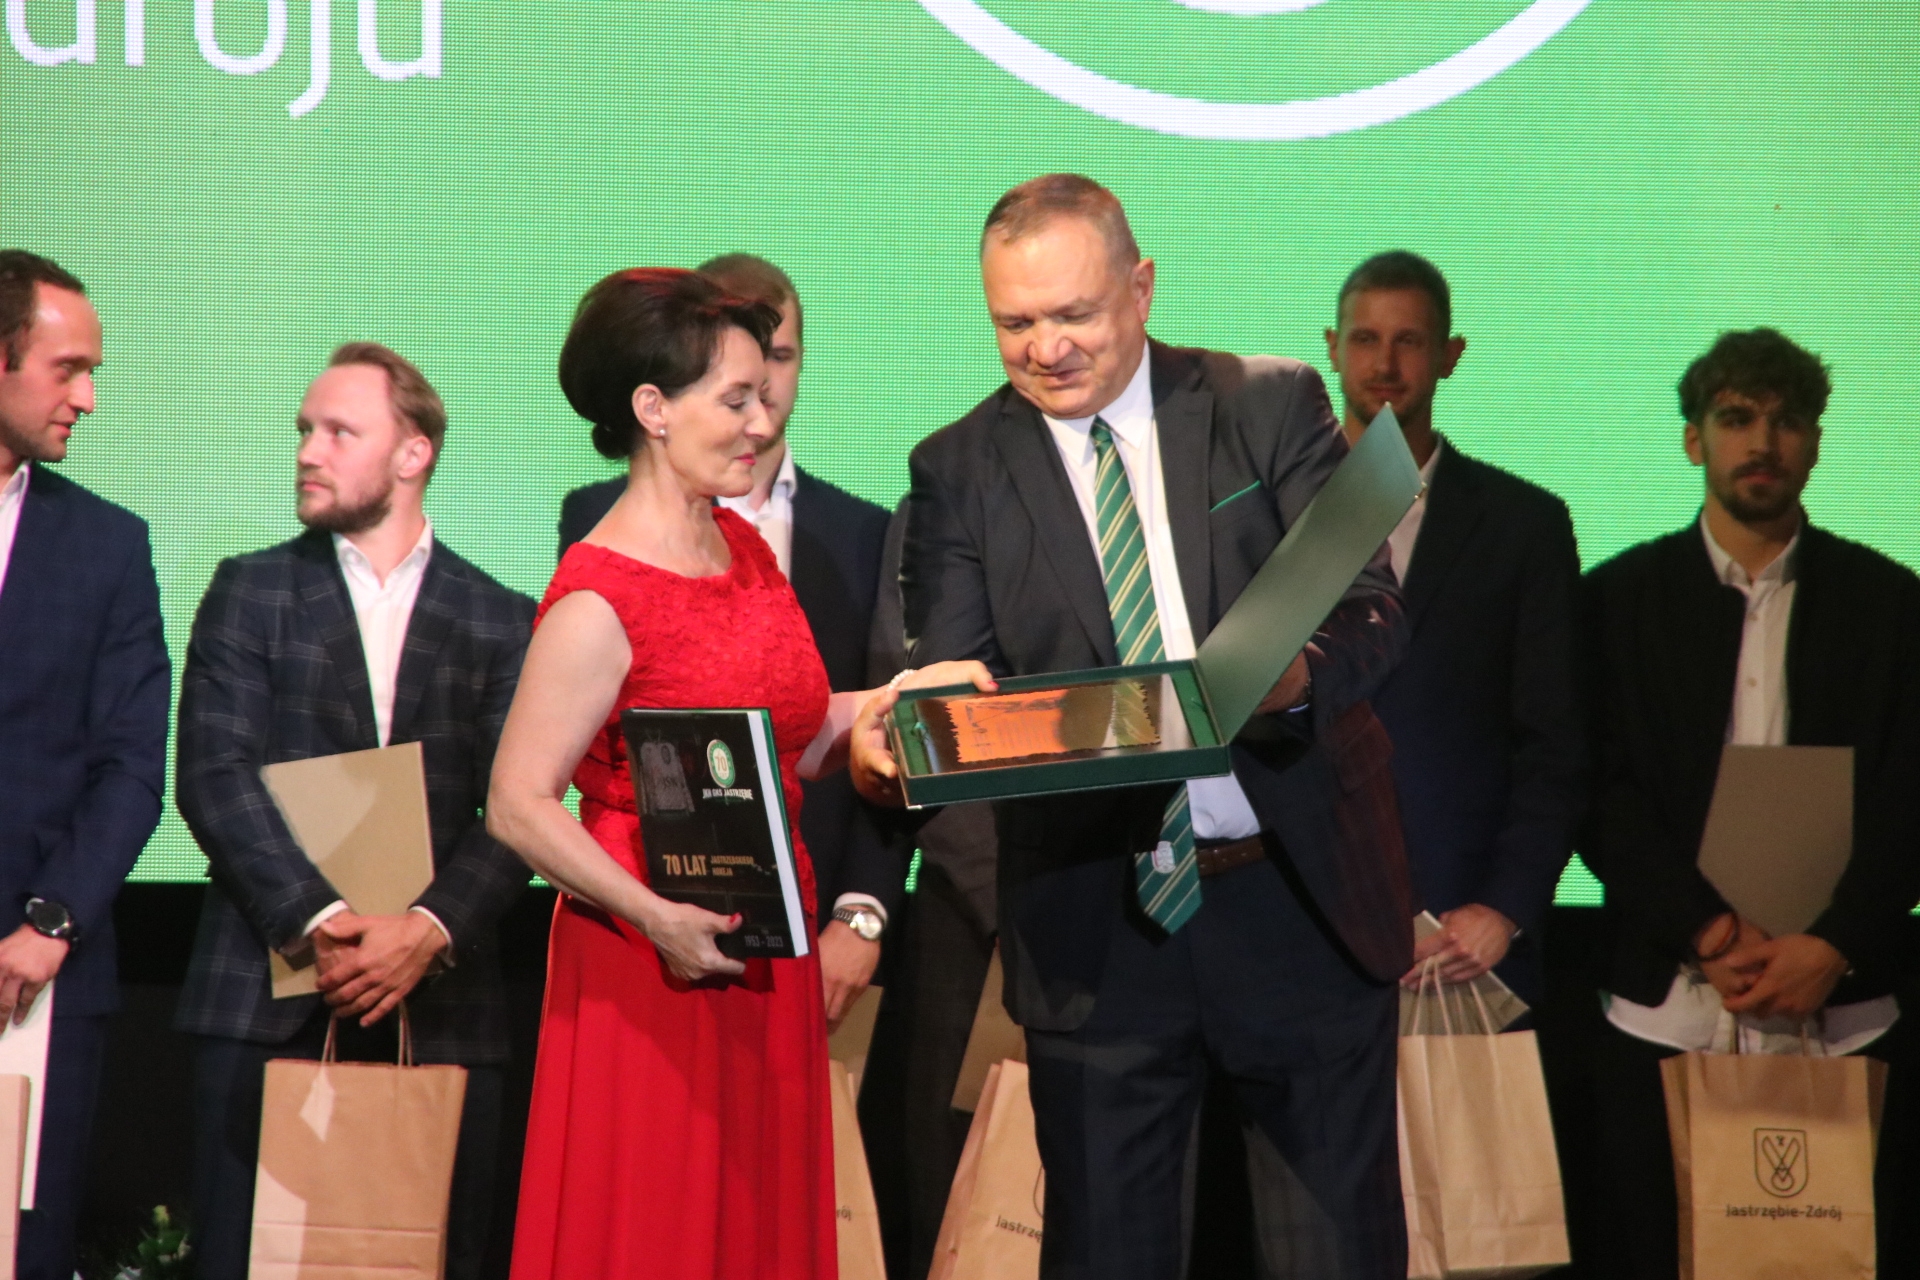 Prezes JKH GKS Jastrzębie Kazimierz Szynal wręczył prezydent Annie Hetman pierwszy egzemplarz książki z okazji 70-lecia klubu.